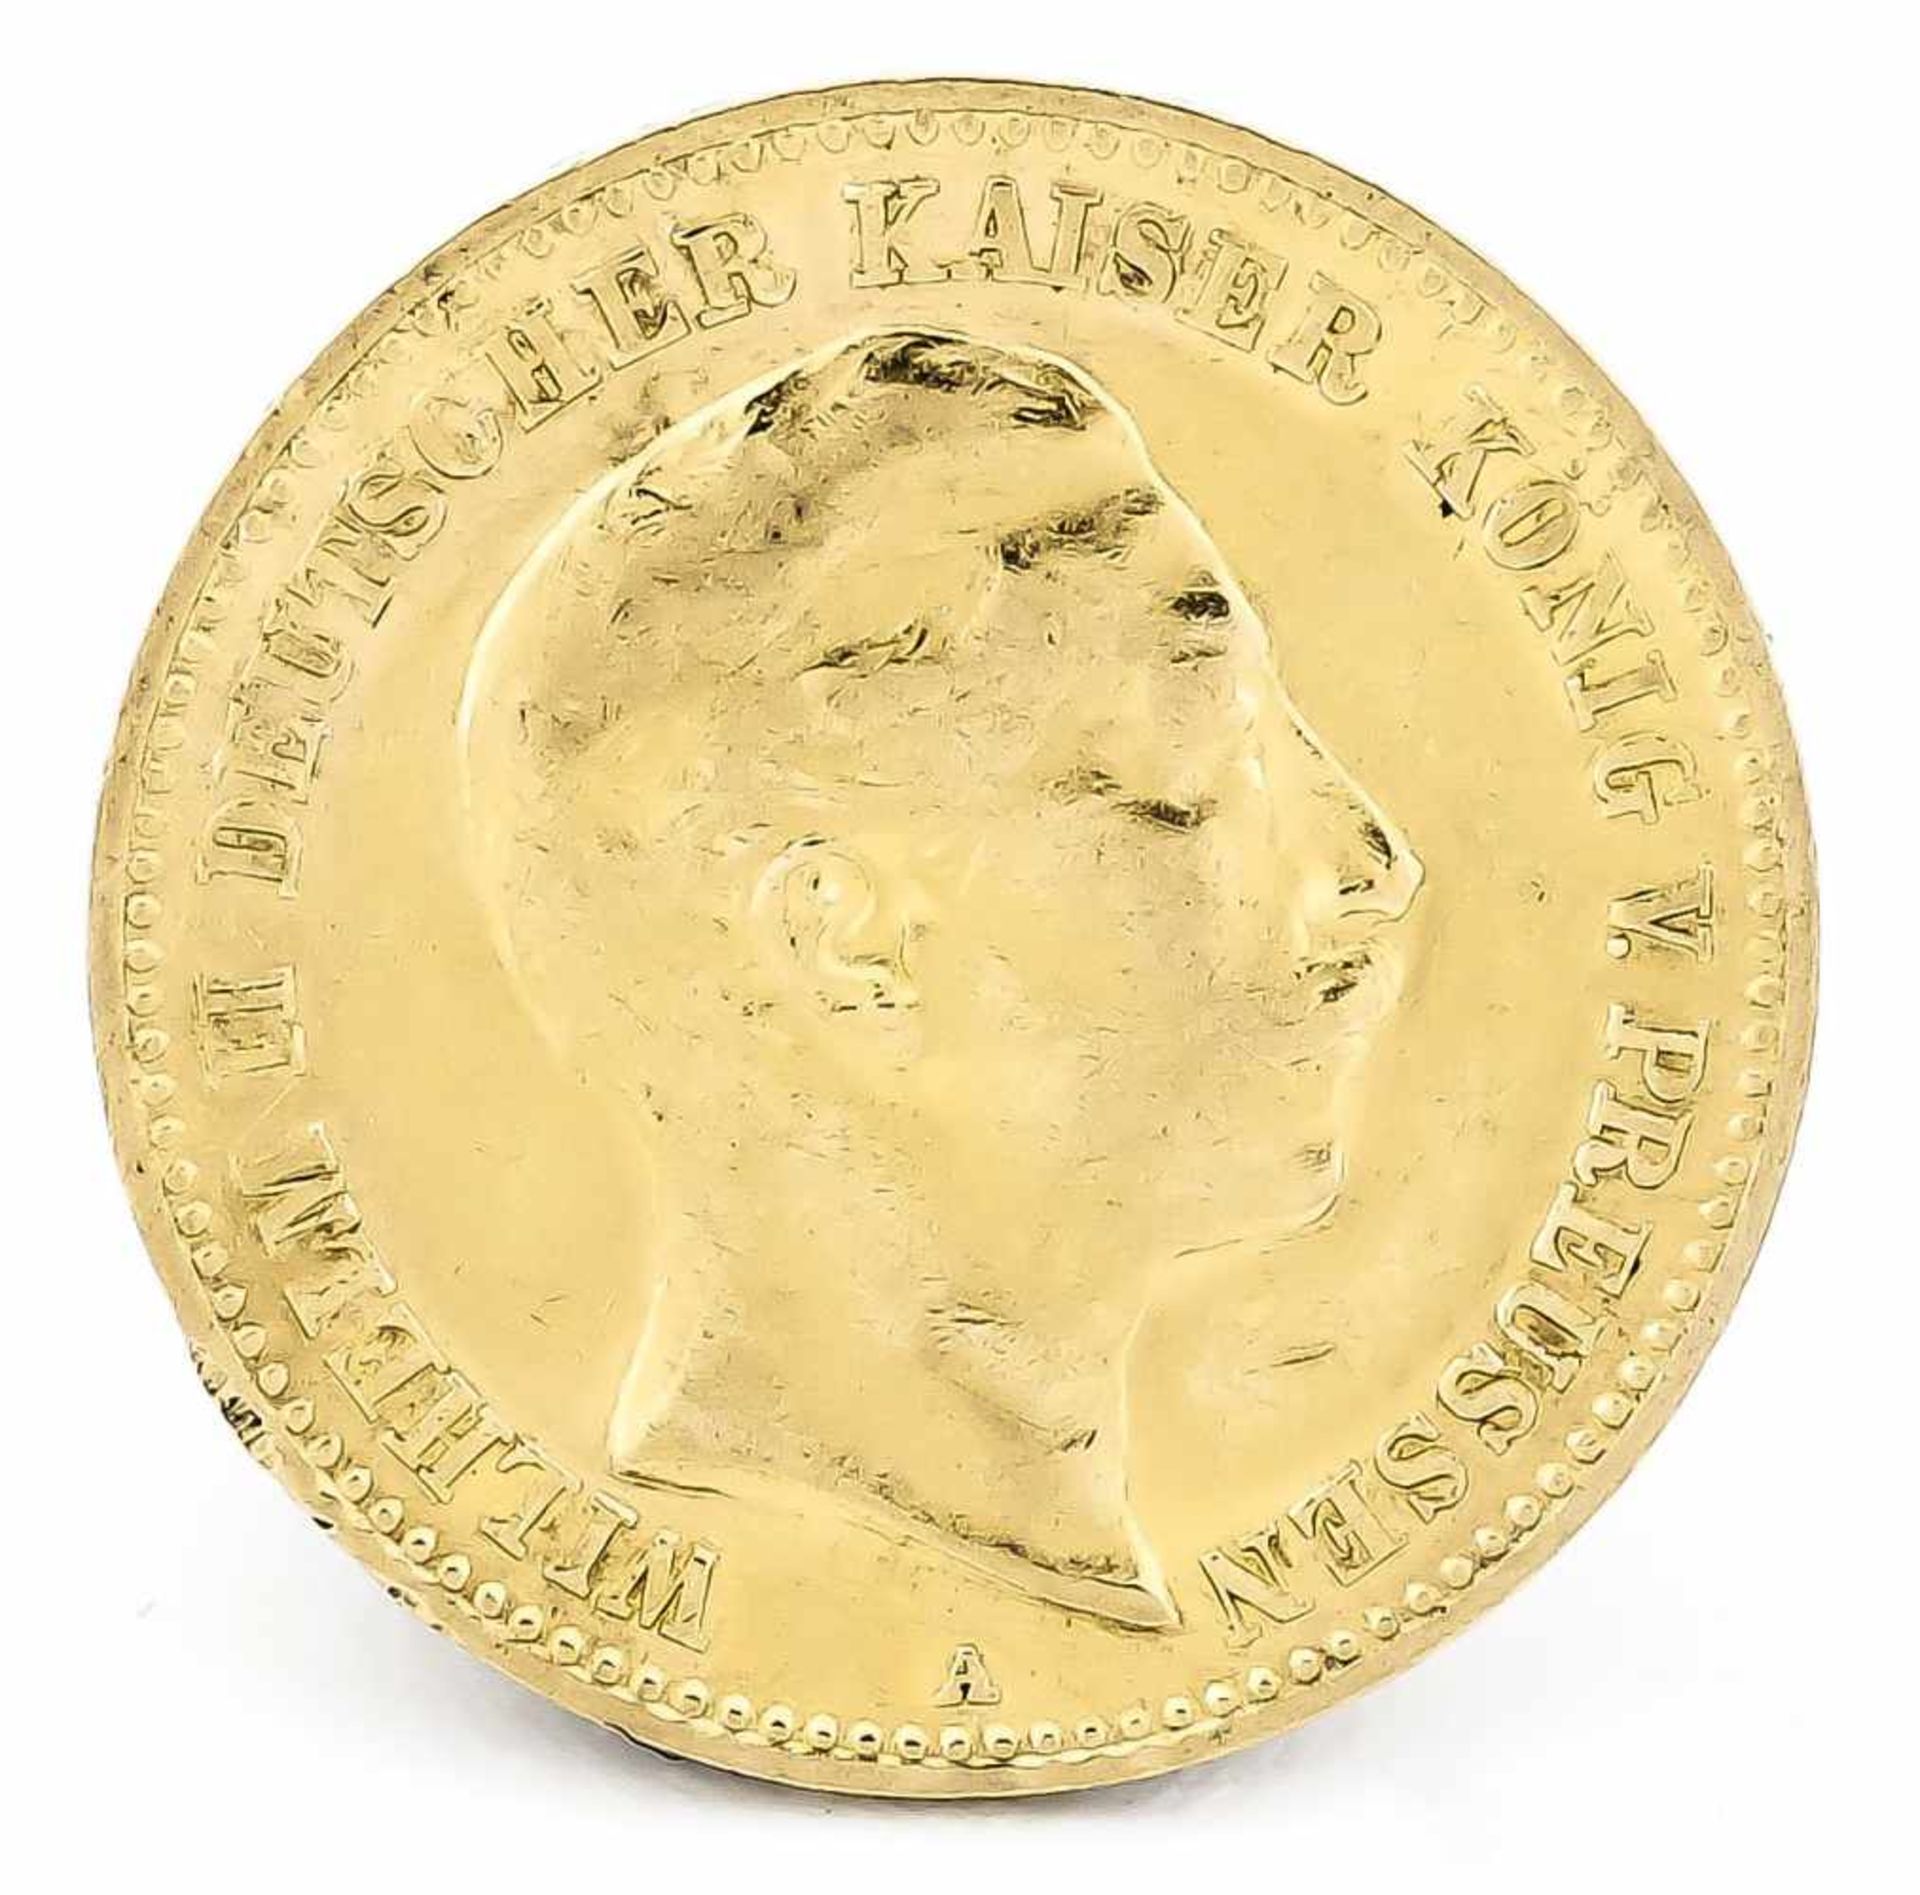 10 Mark, Preußen, Wilhelm II. Deutscher Kaiser König von Preußen, 1898 A, in vz